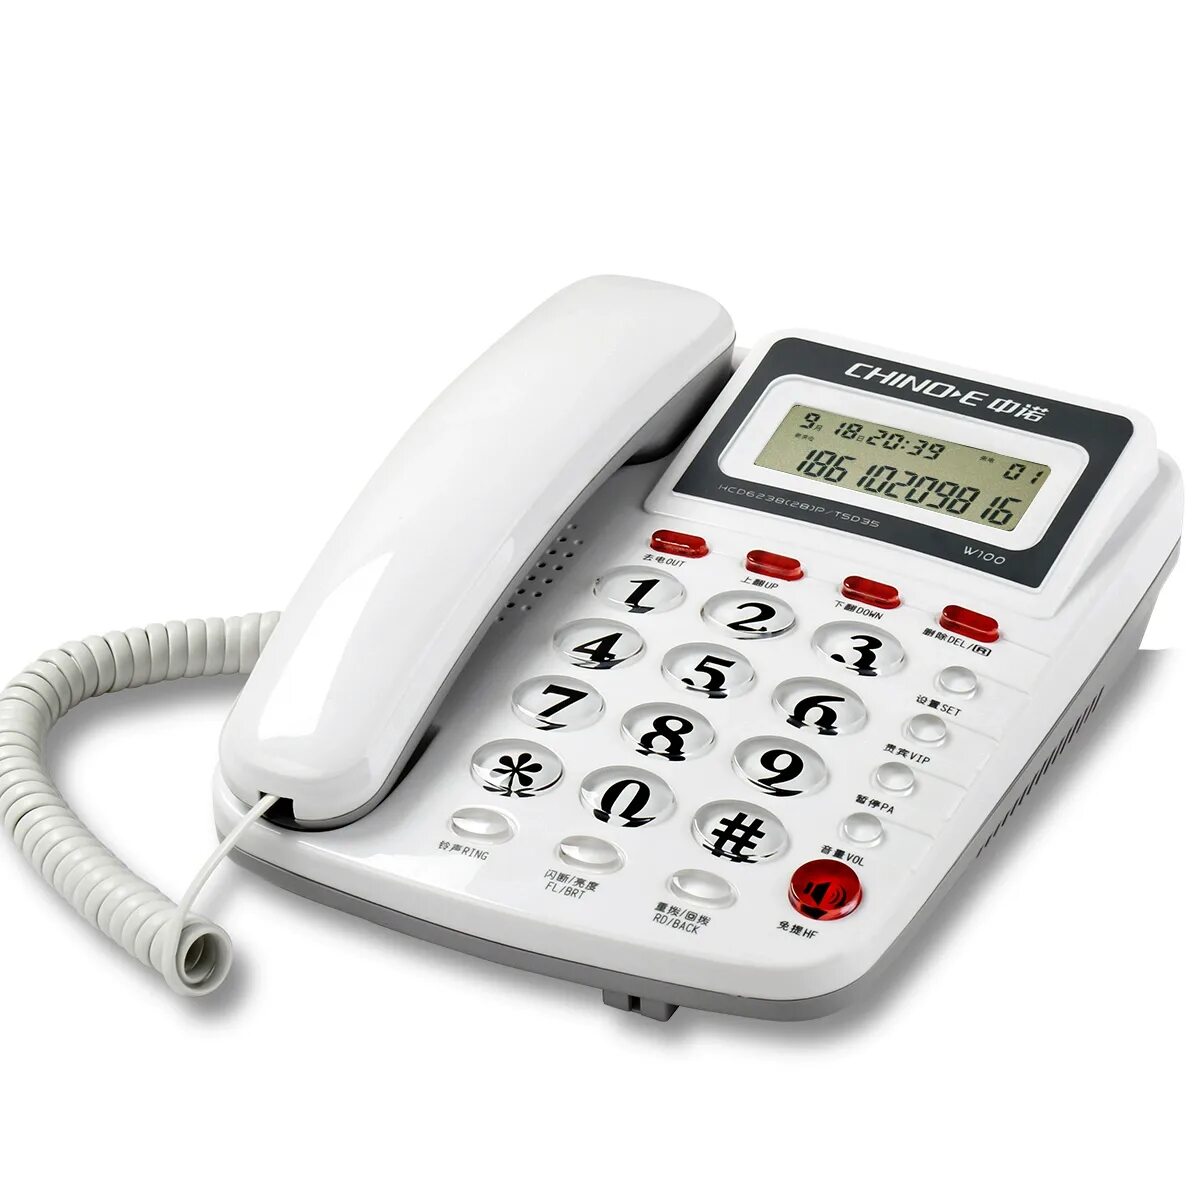 Стационарный телефон Intego kxt210. Проводной стационарный телефон буг202. Стационарный телефон Unitel City. Стационарный телефон model 8080. Про стационарный